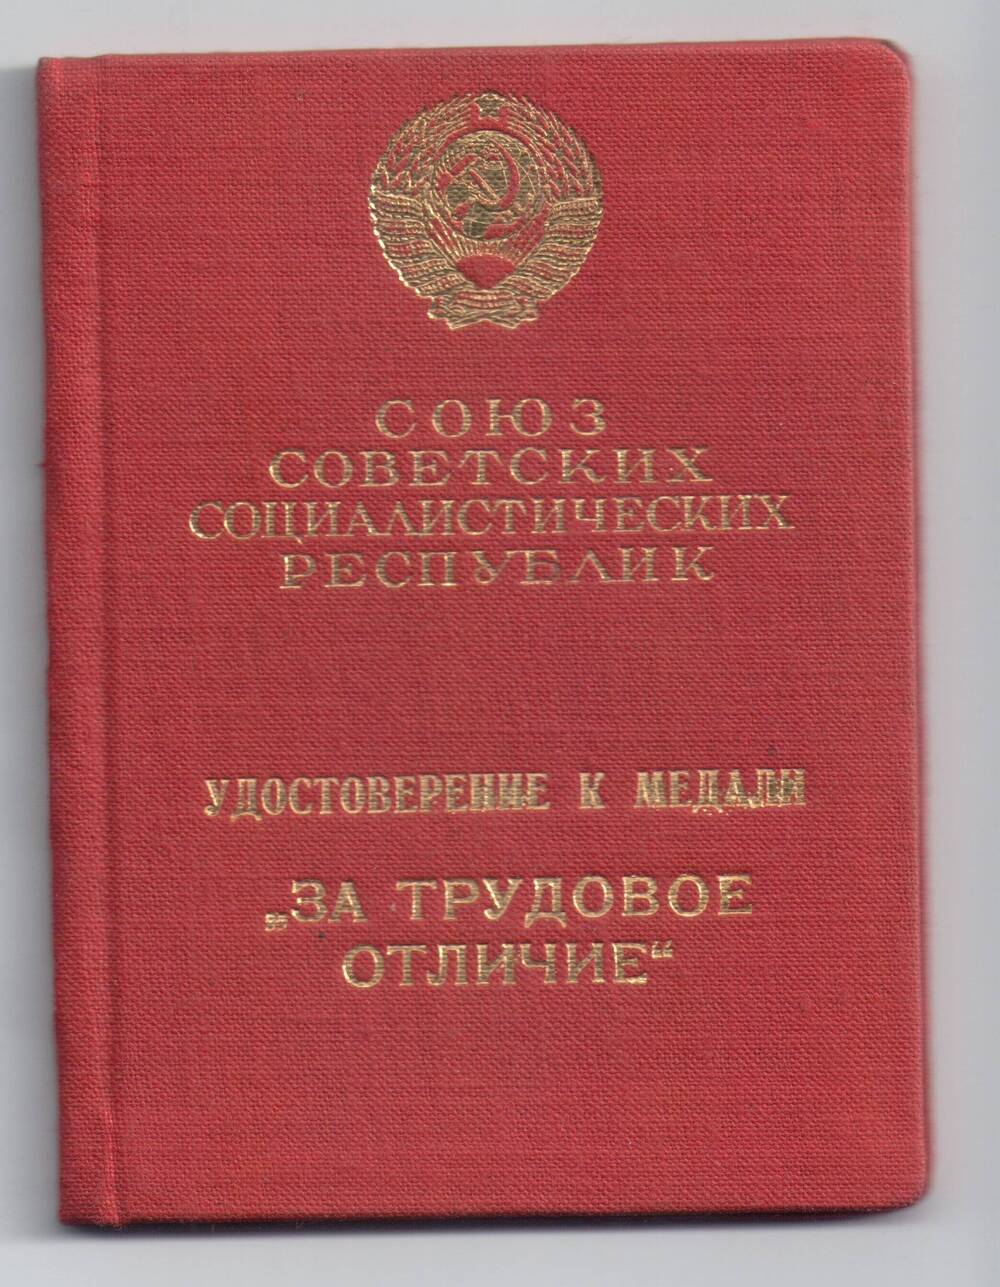 Удостоверение №24884
к медали «За трудовое отличие»
Горохова Михаила Евдокимовича